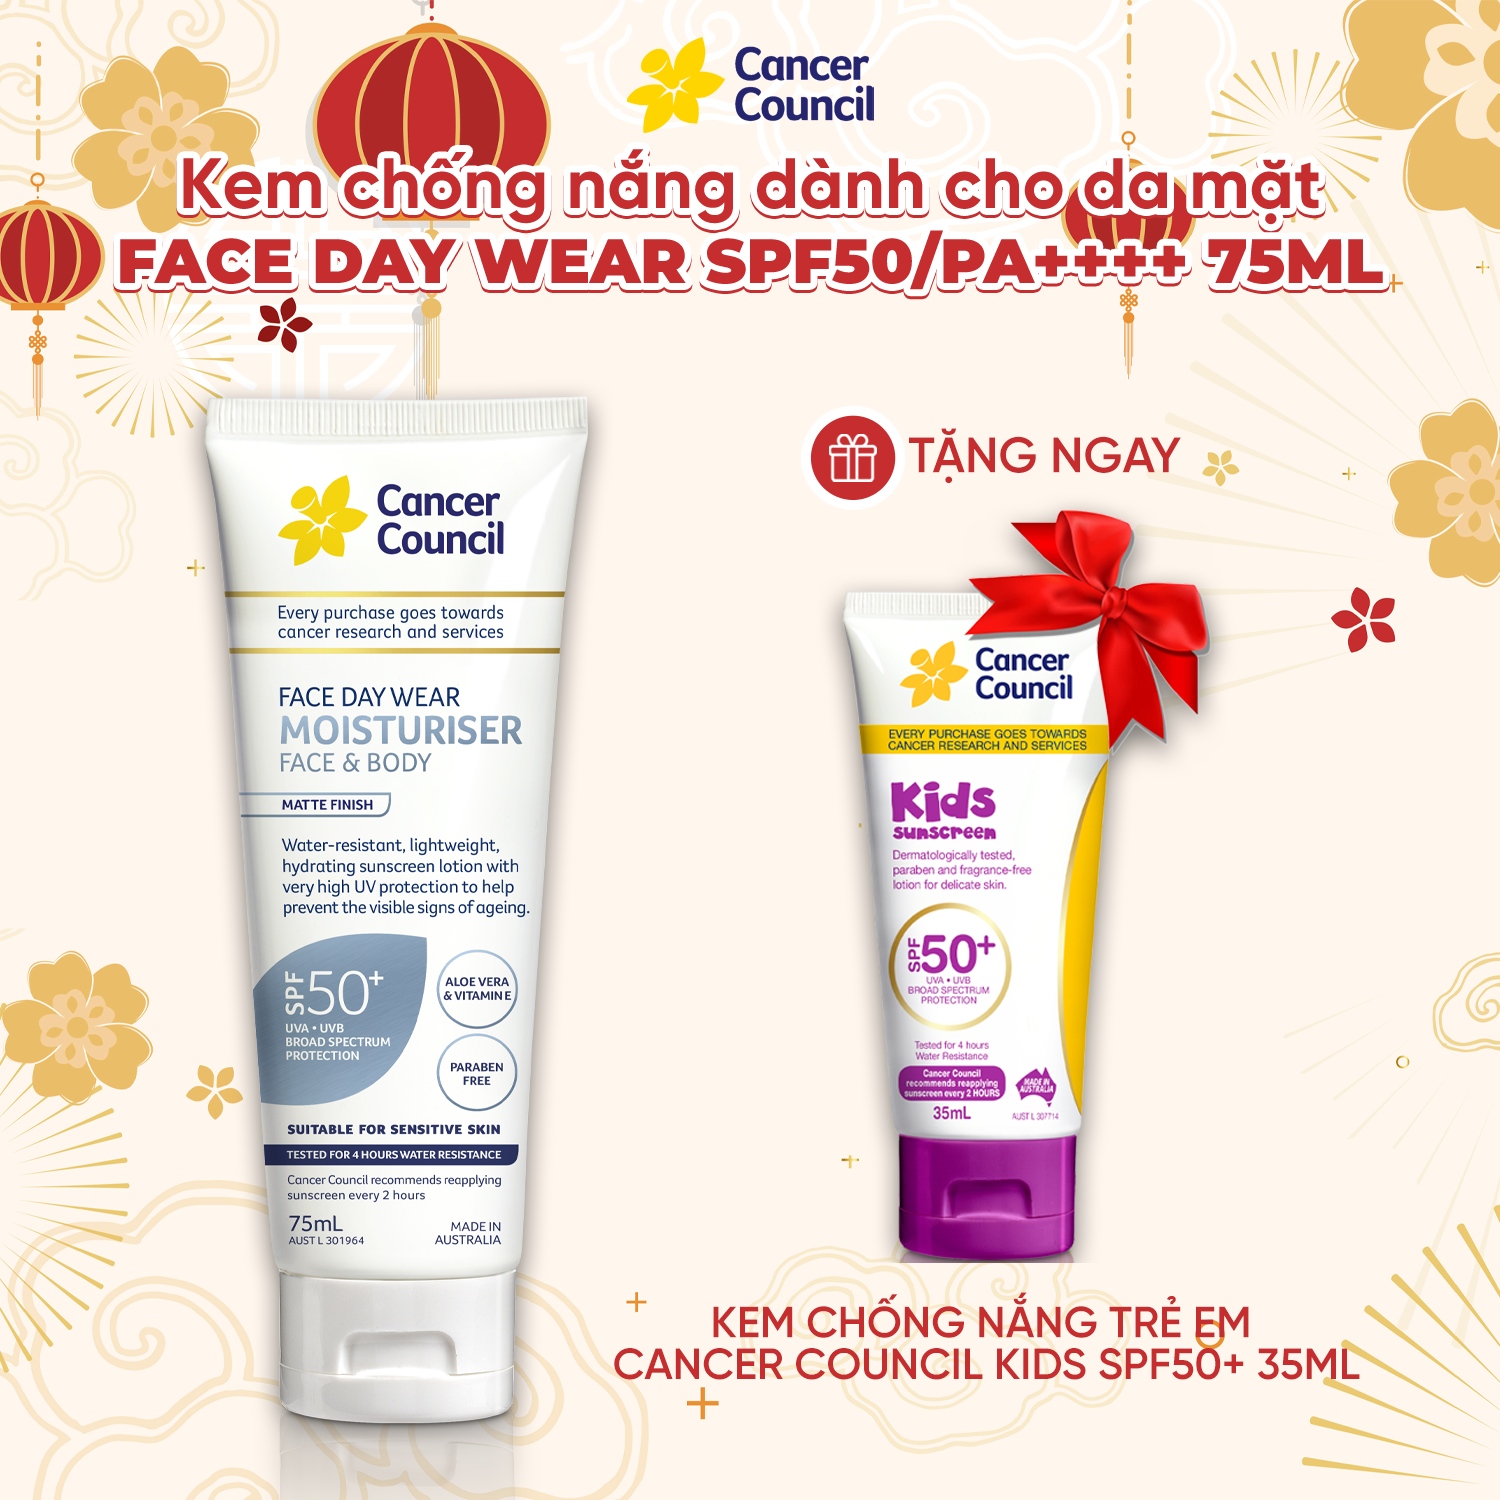 Kem chống nắng cho da mặt & body chống nước Cancer Council Face Day Wear